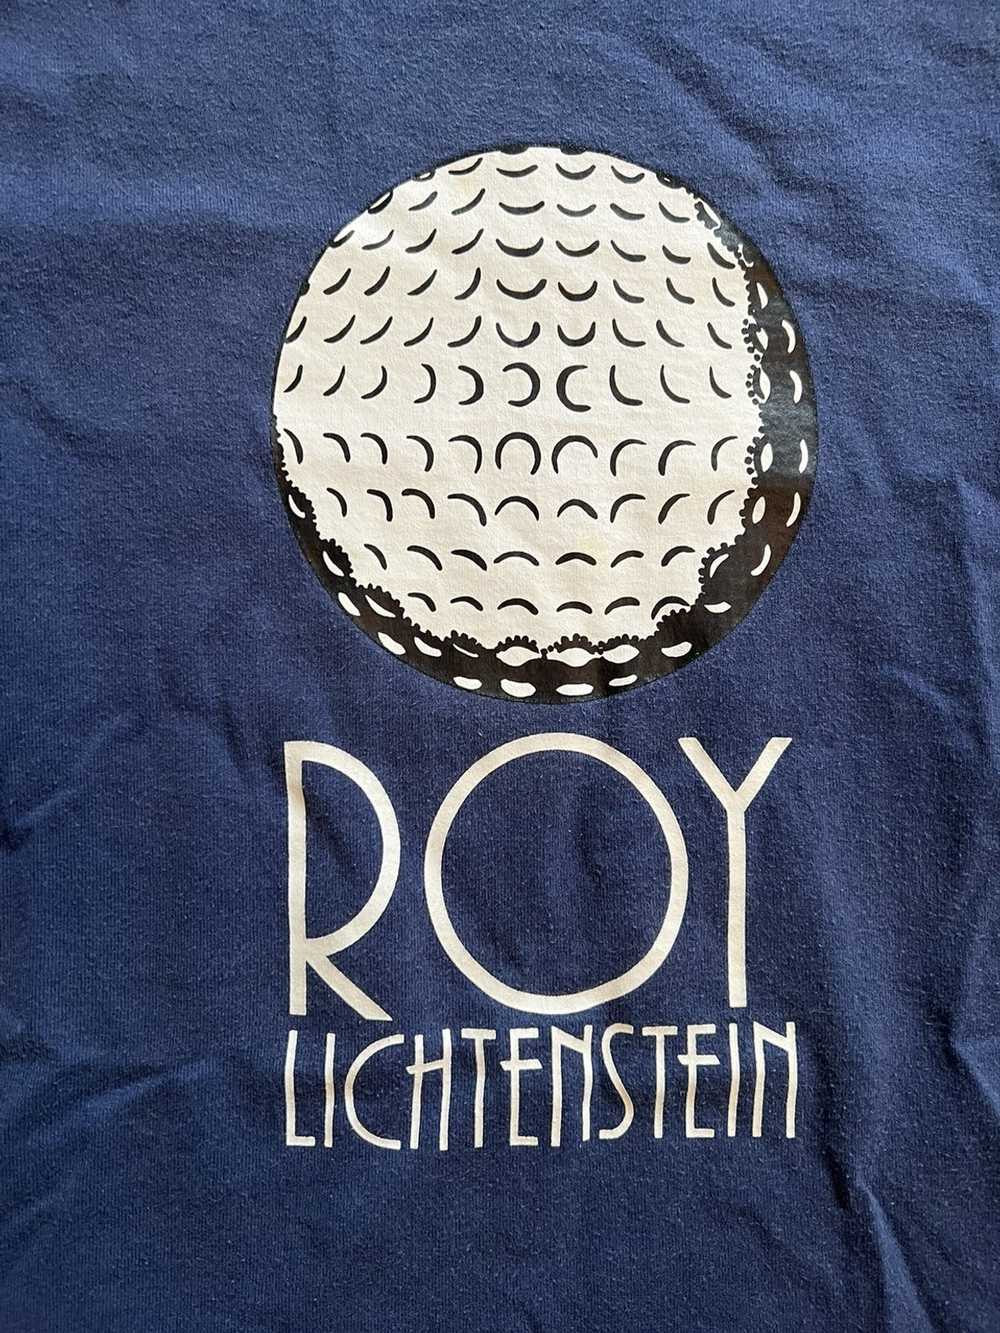 Vintage Roy Lichtenstein golf ball t shirt tee - image 2